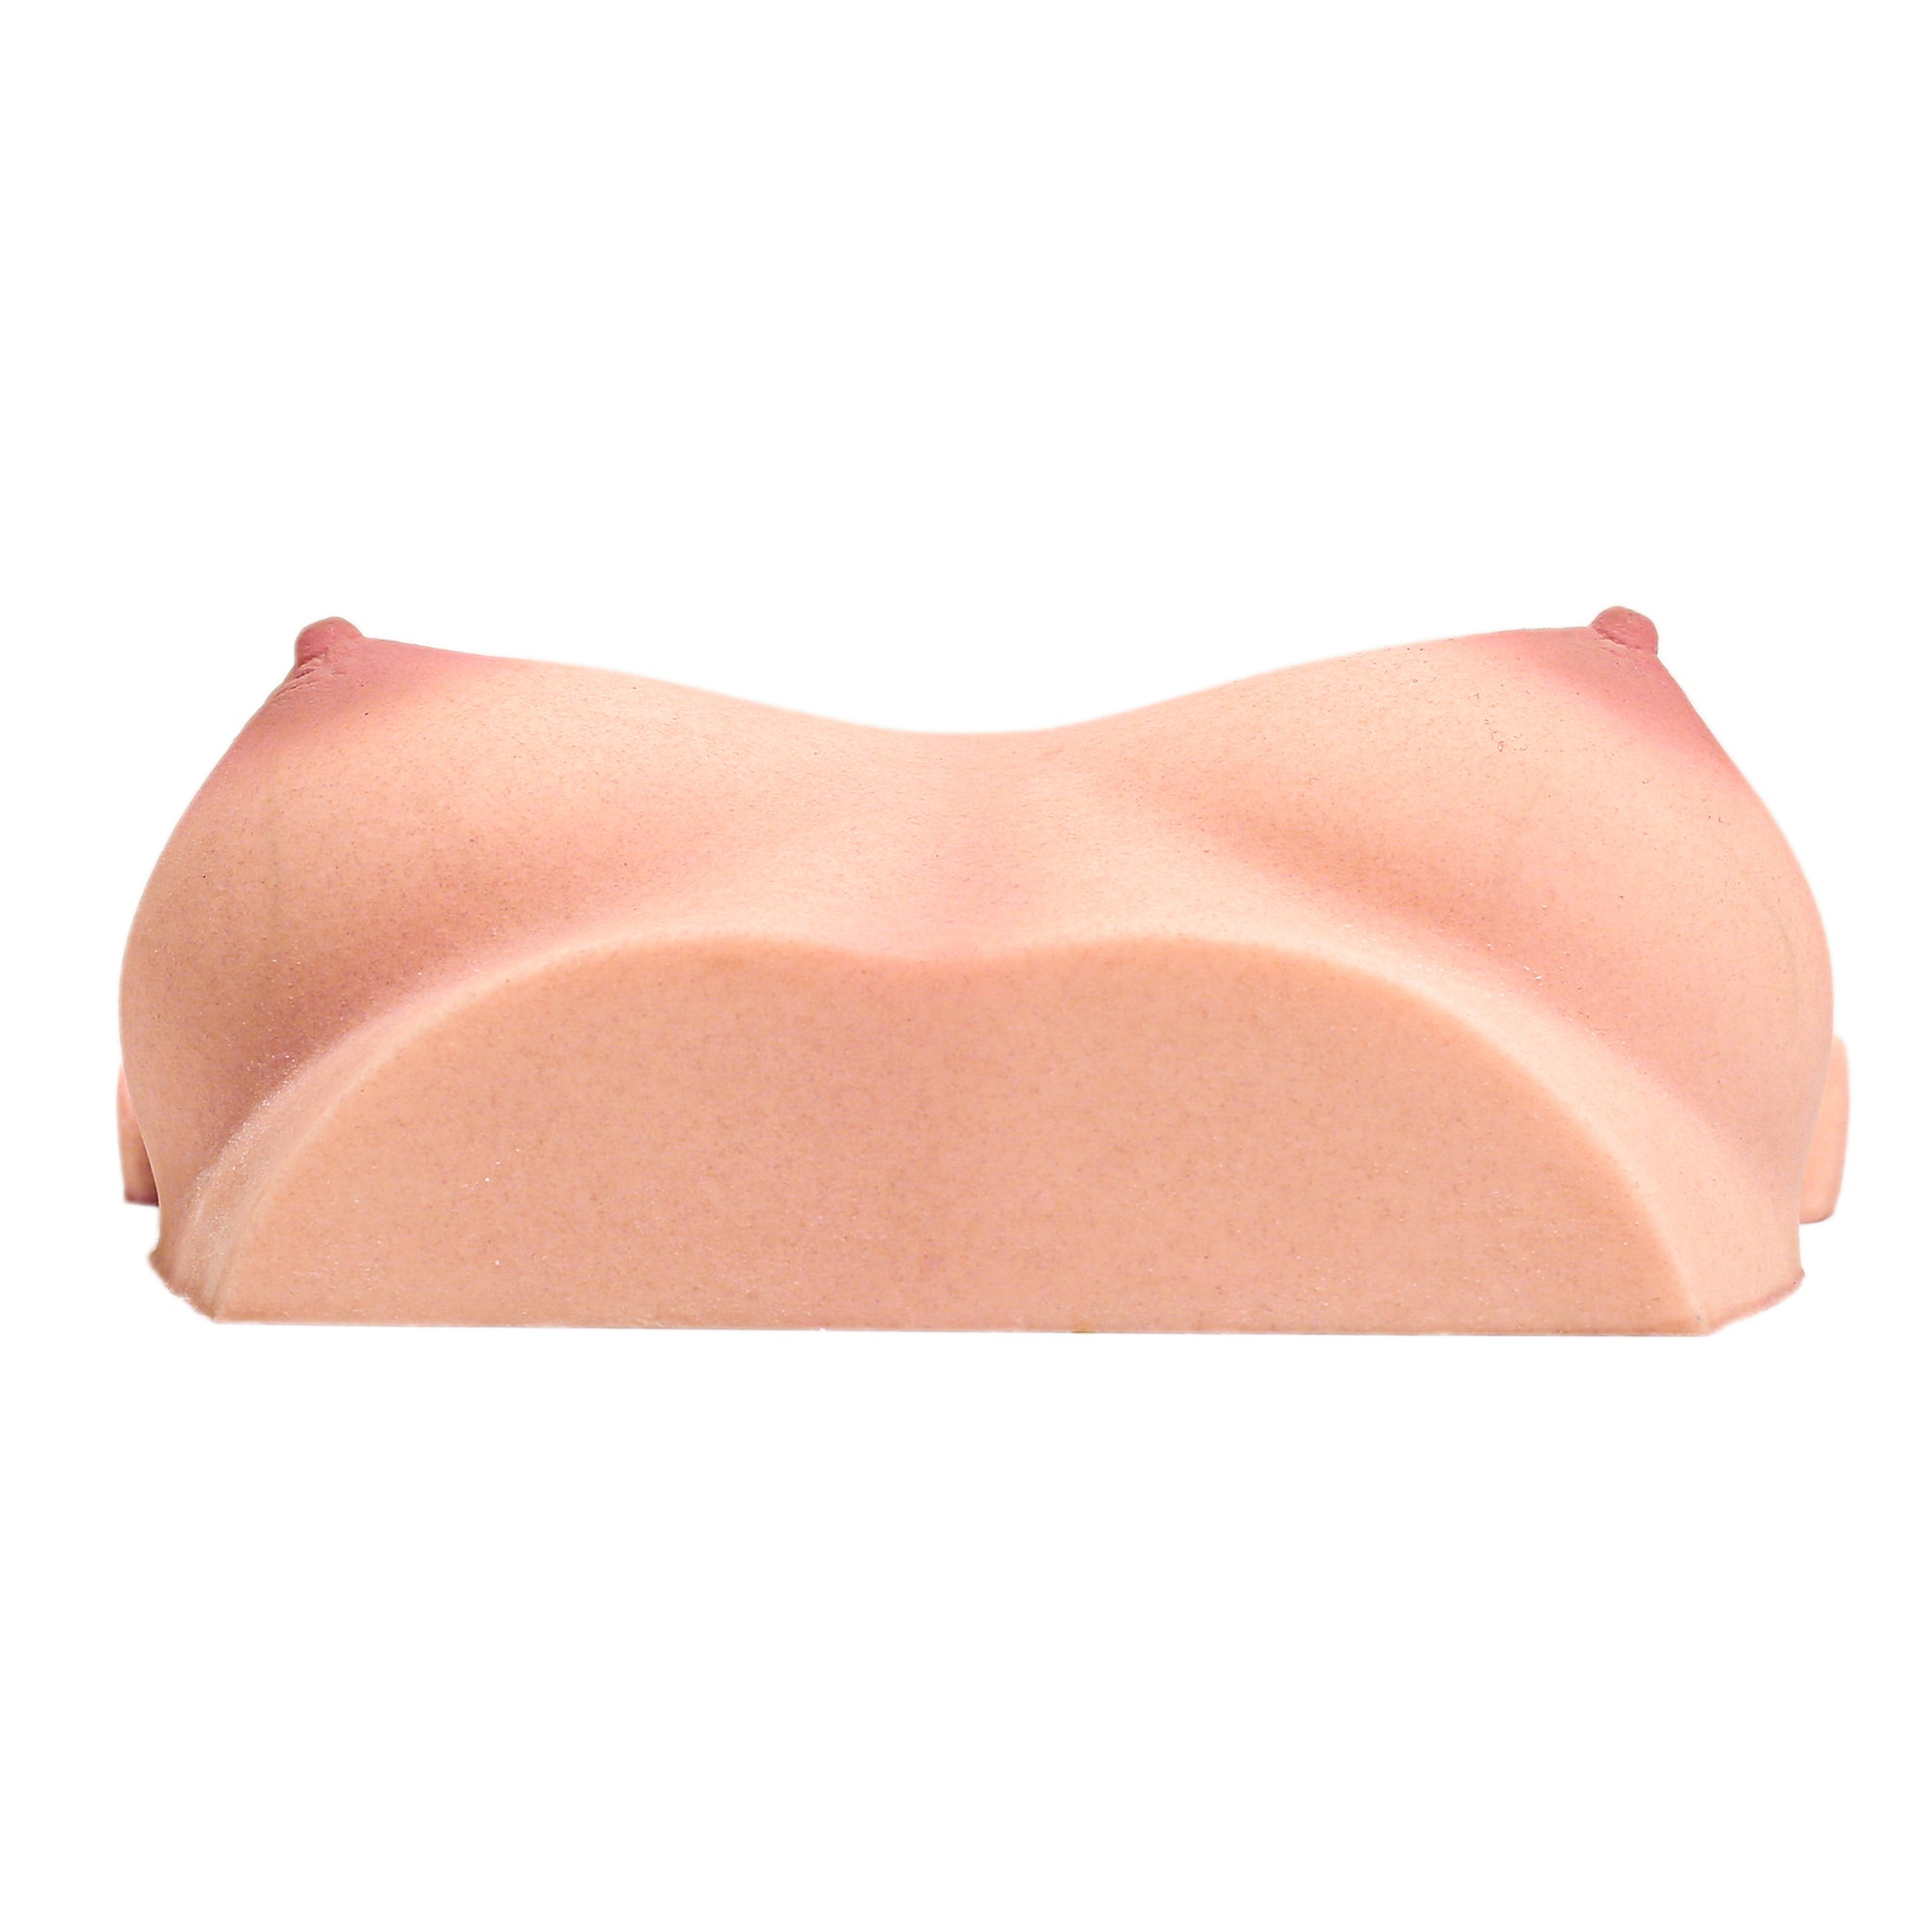 CLIMAX DOLL - Silicone Torso Breast #61